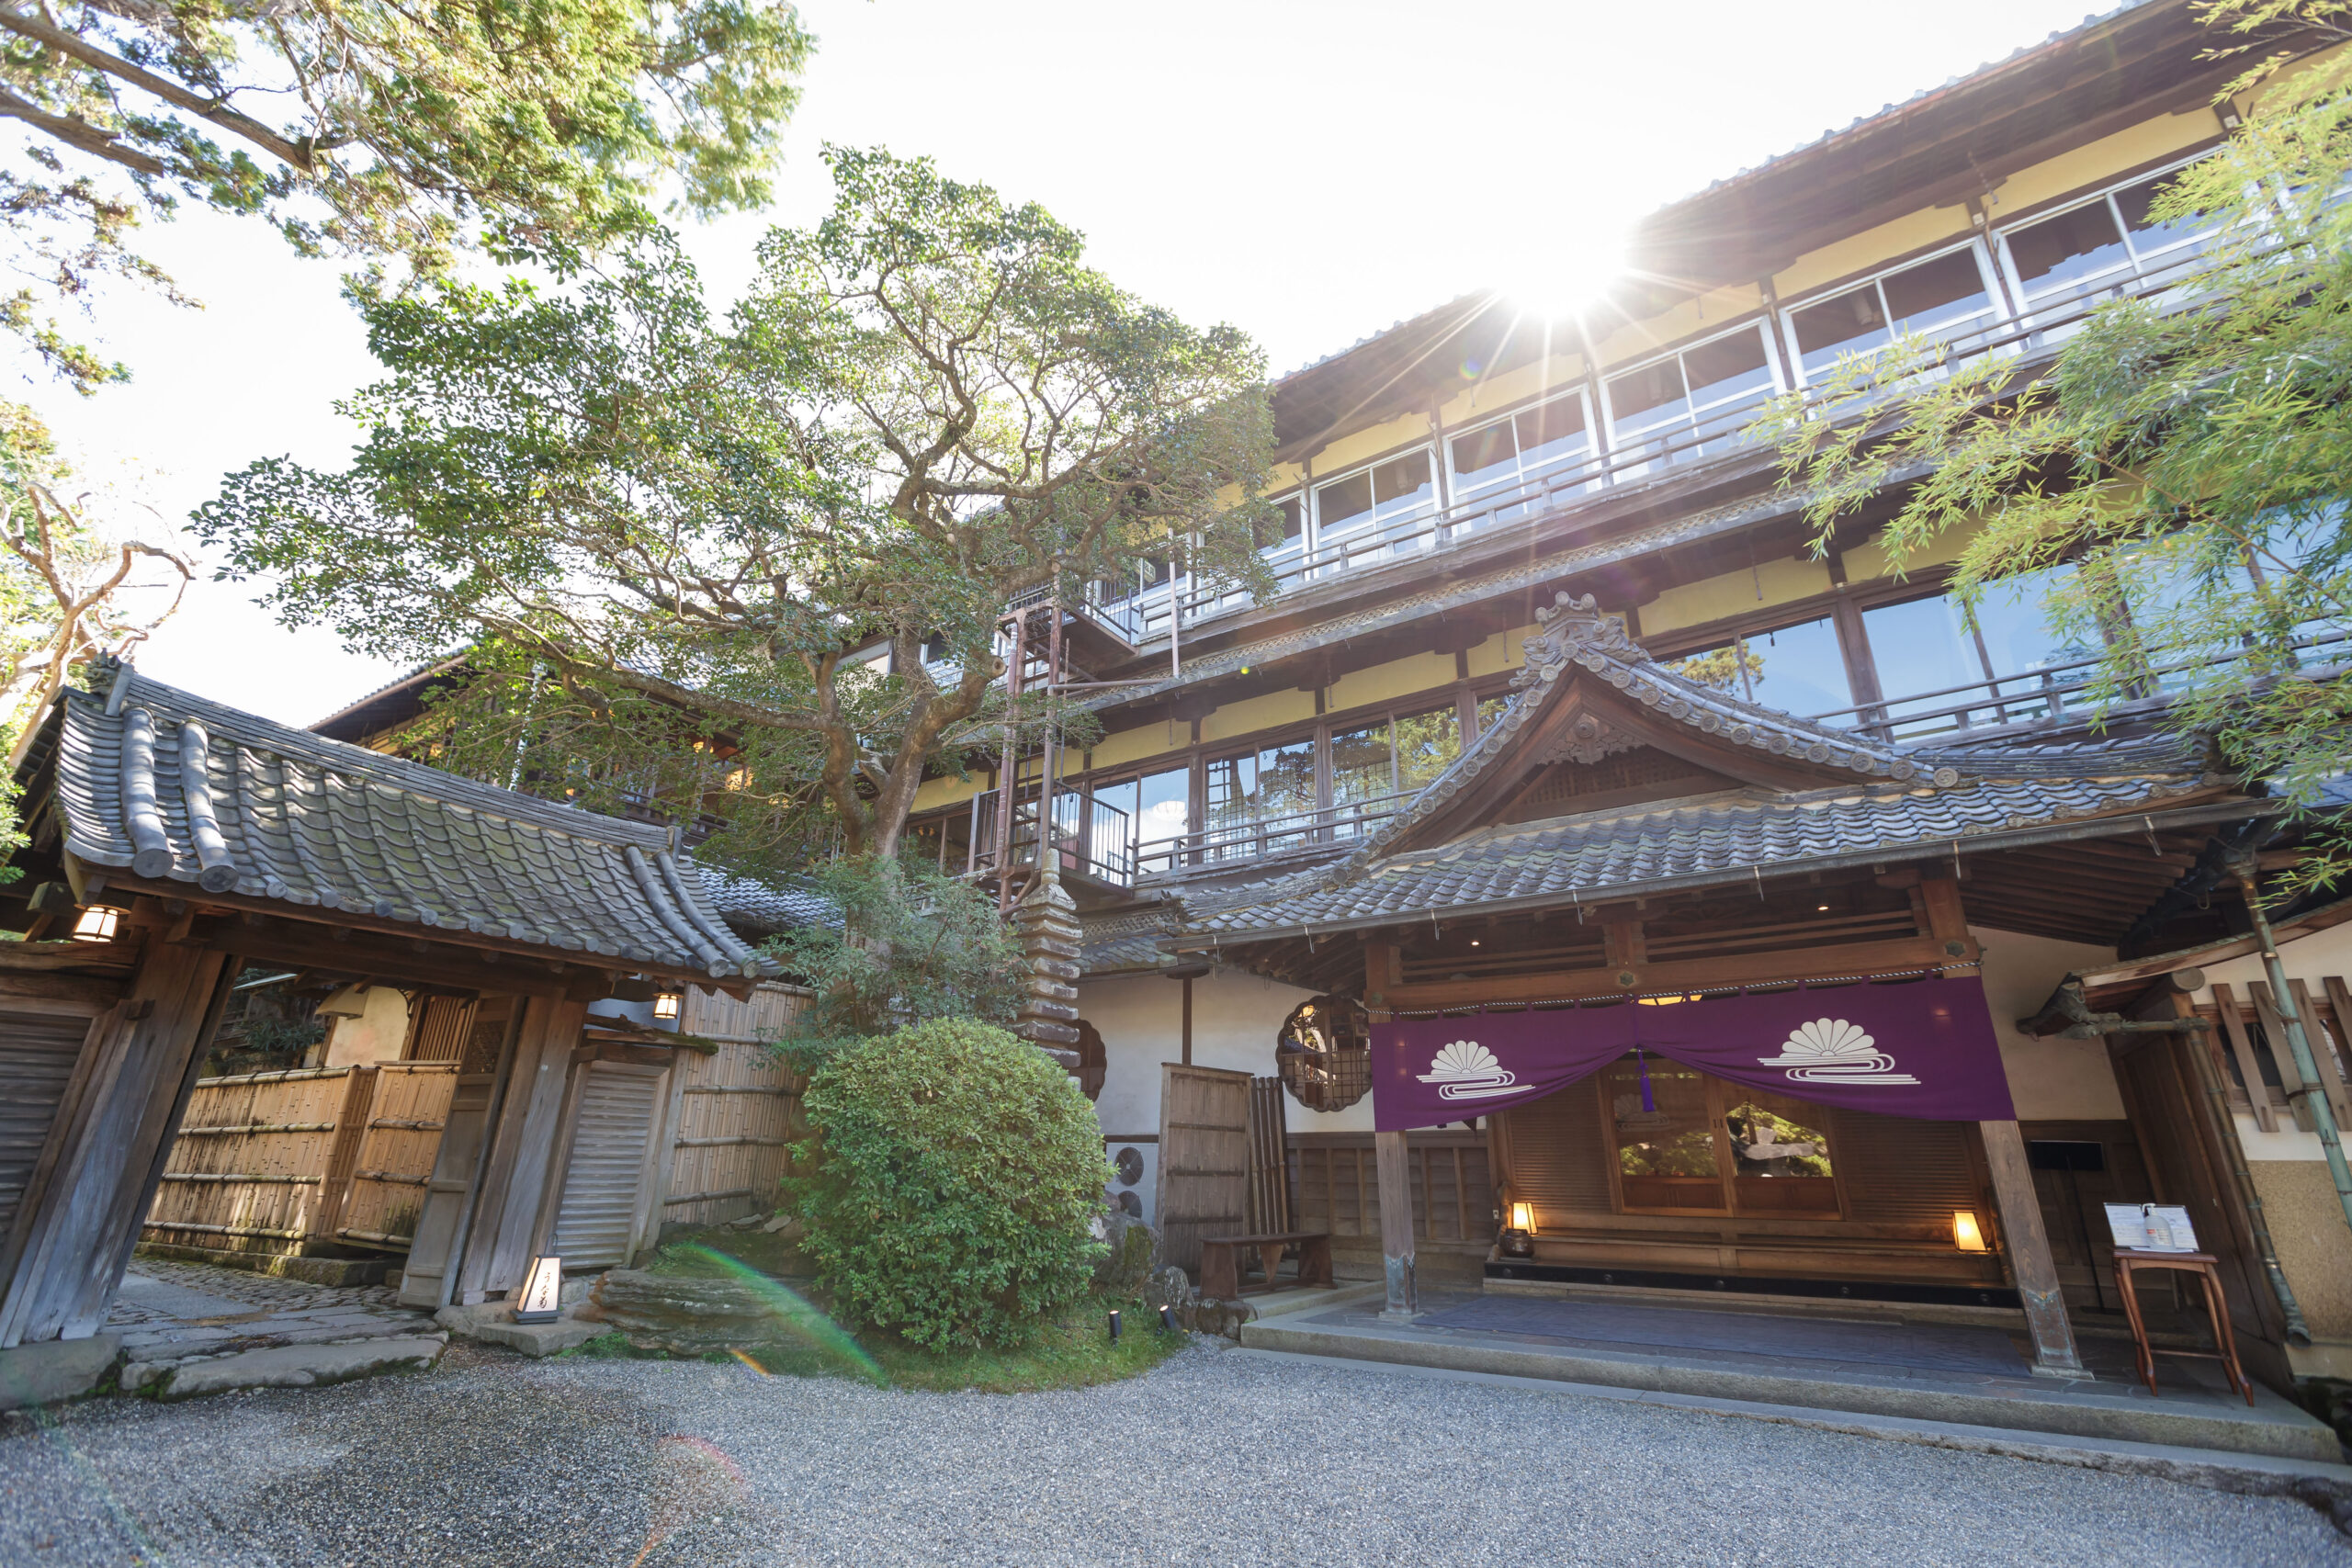 ザトリートドレッシング大阪店の提携会場の菊水楼は奈良に佇むご結婚式会場です。